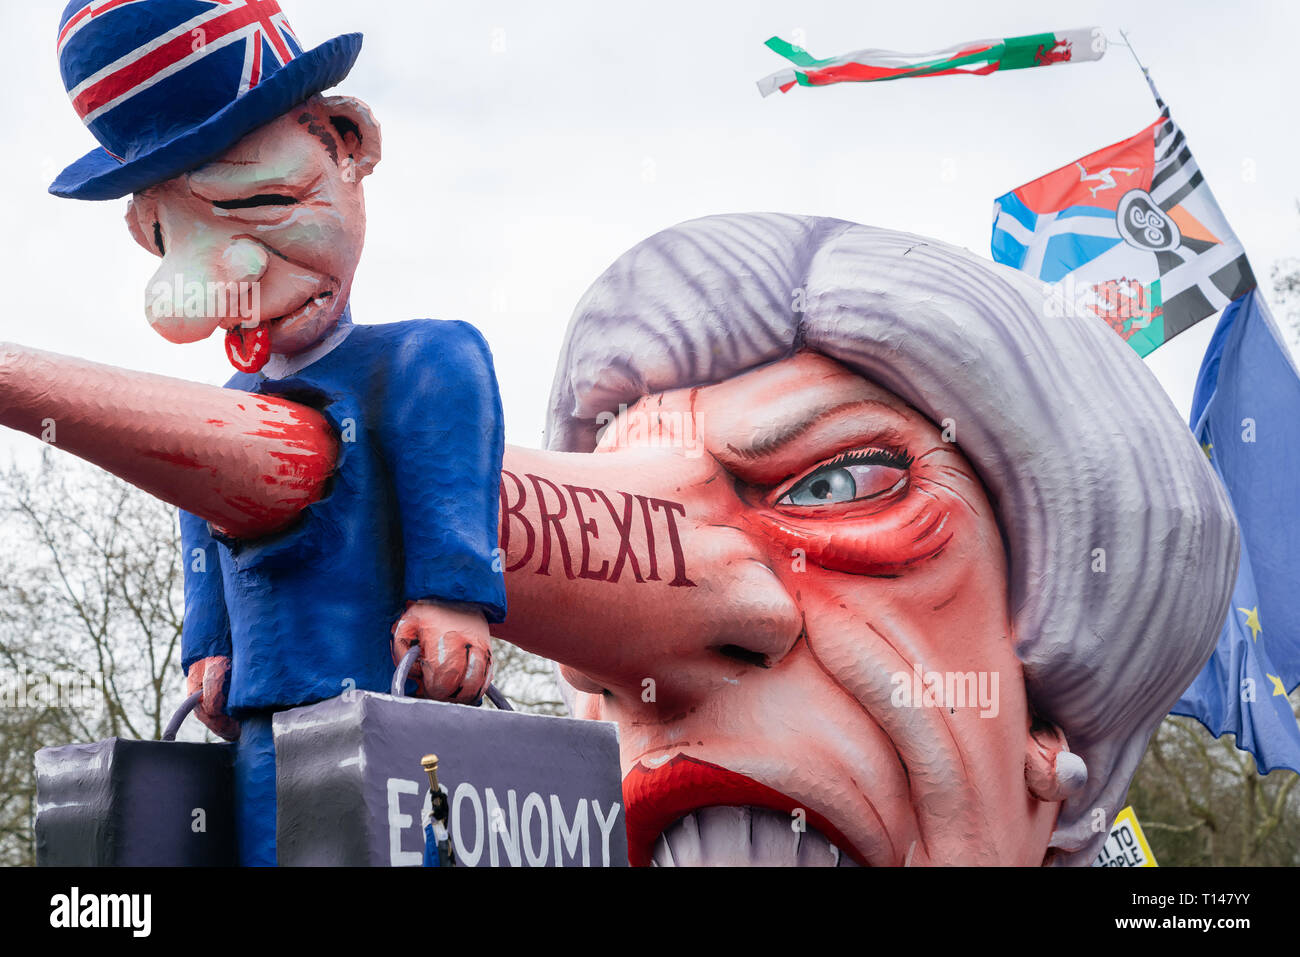 Londres, Royaume-Uni. Mar 23, 2019. Des milliers de personnes viennent à une manifestation appelant à un deuxième référendum sur la sortie de la Grande-Bretagne de l'Union européenne, connue sous le nom de Brexit. Credit : AndKa/Alamy Live News Banque D'Images